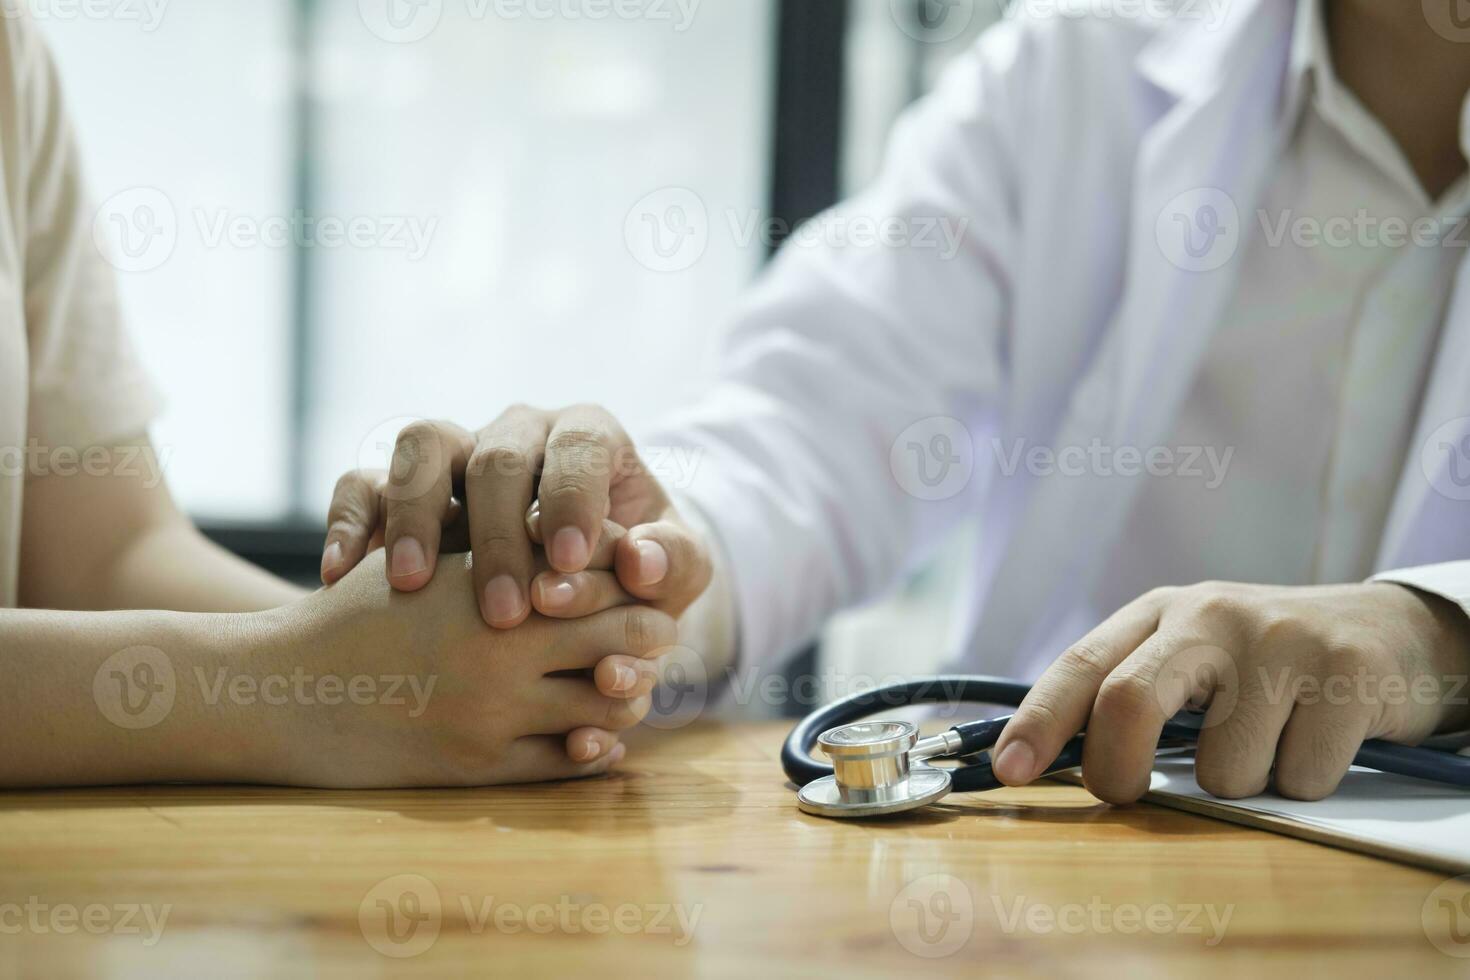 snäll läkare erbjudande en kärleksfull gest till en sjuk person under en hälsa kris. foto